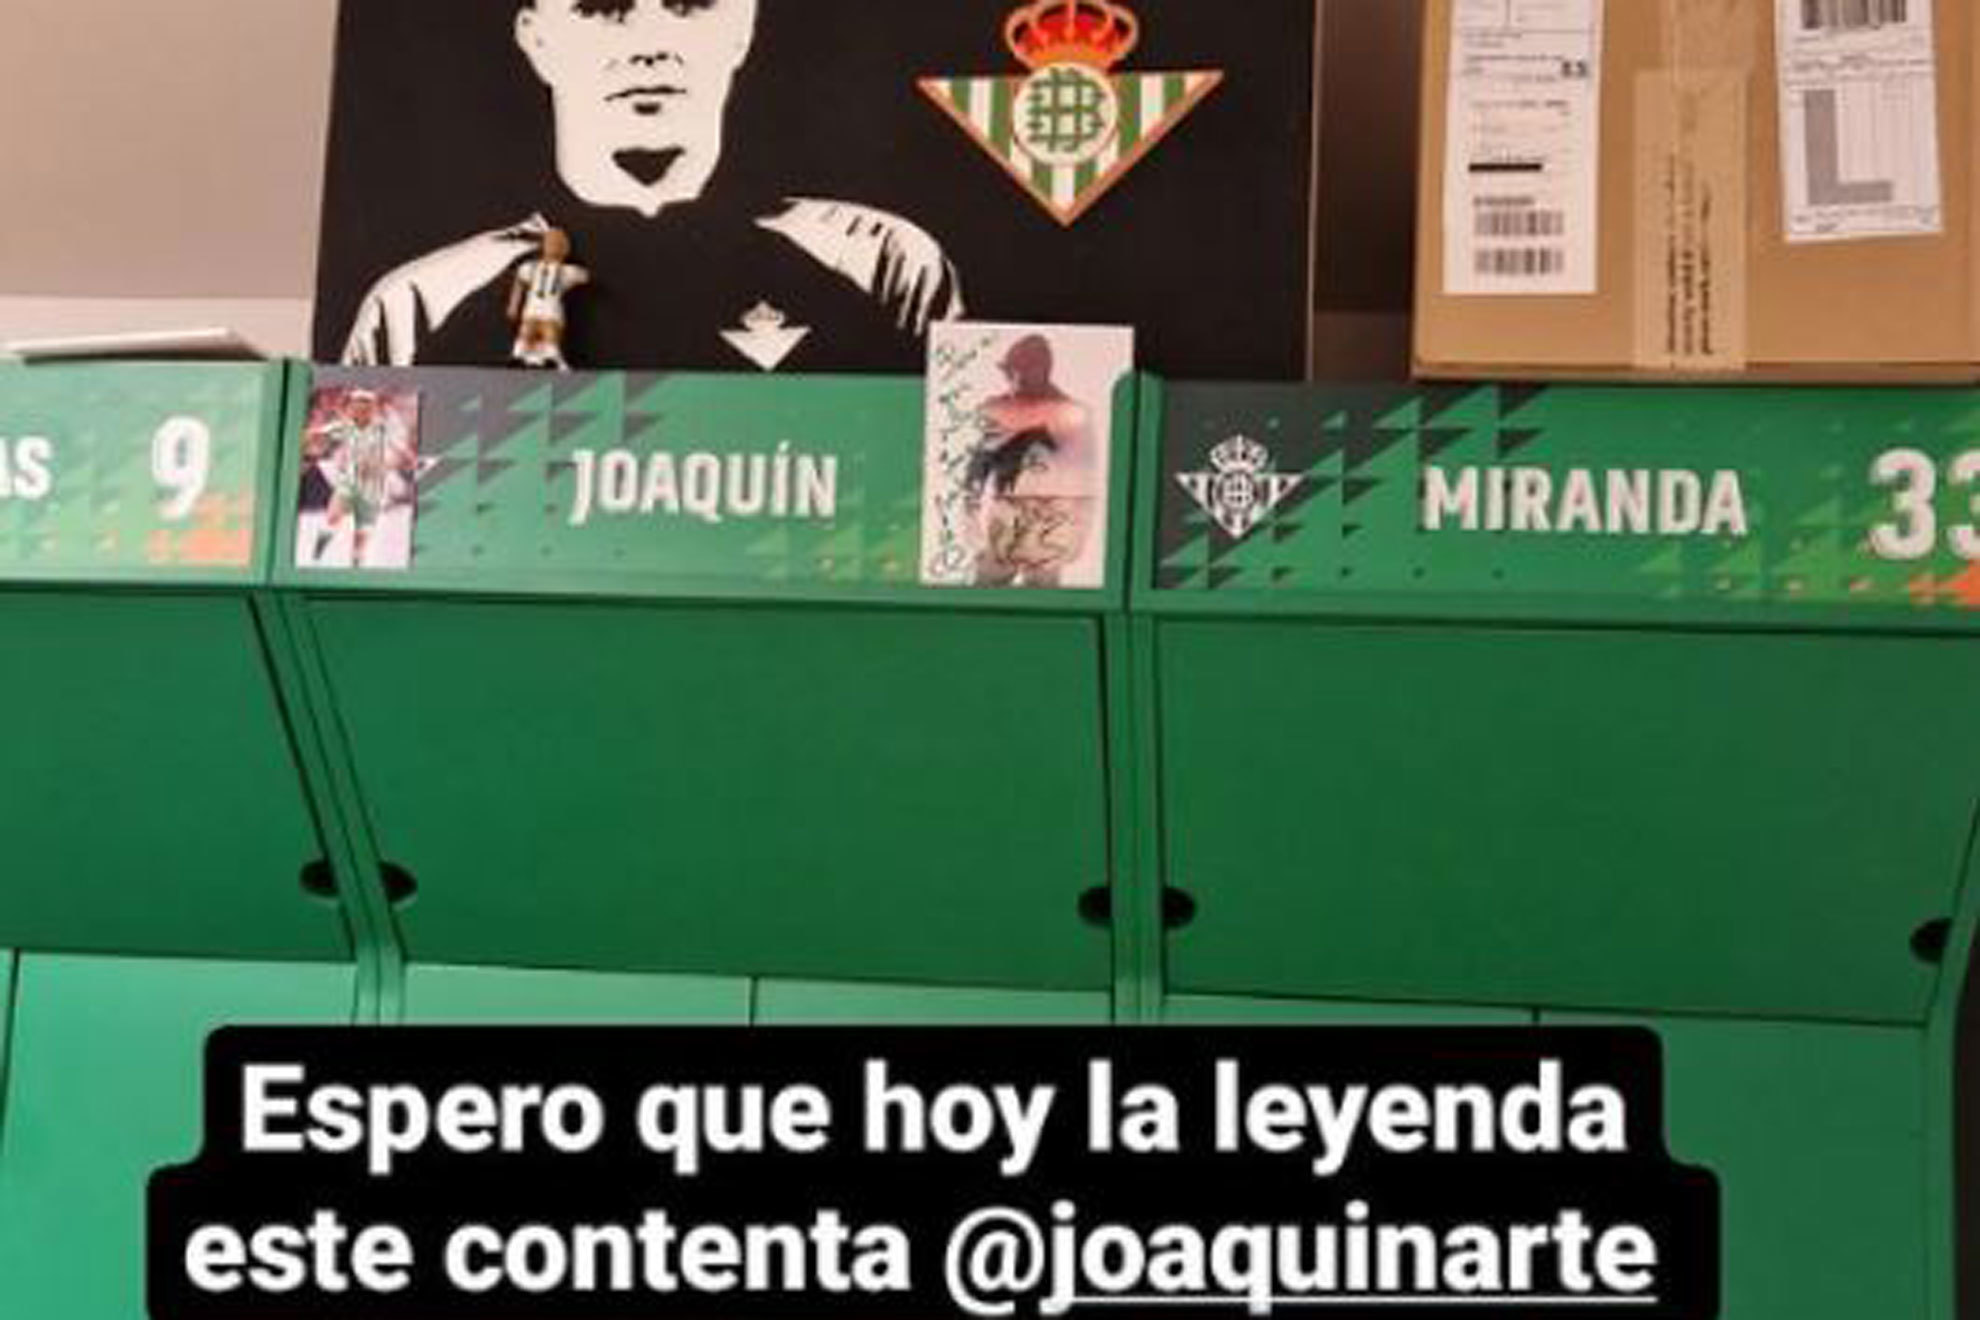 Haaland se acuerda "de la leyenda" Joaqun tras aplastar al Sevilla y obtiene respuesta...